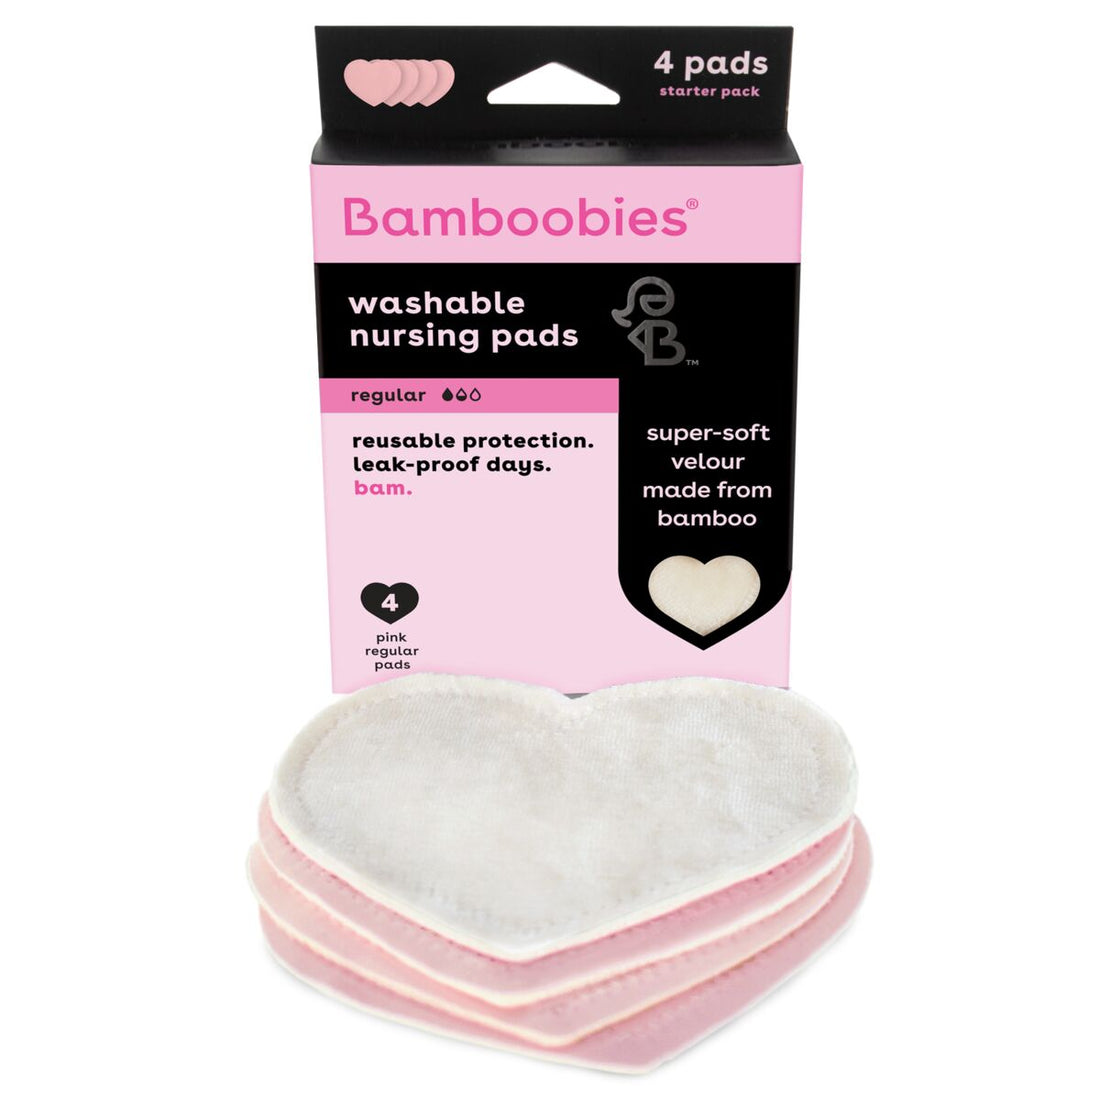 Bamboobies regular nursing pads (2 pairs)